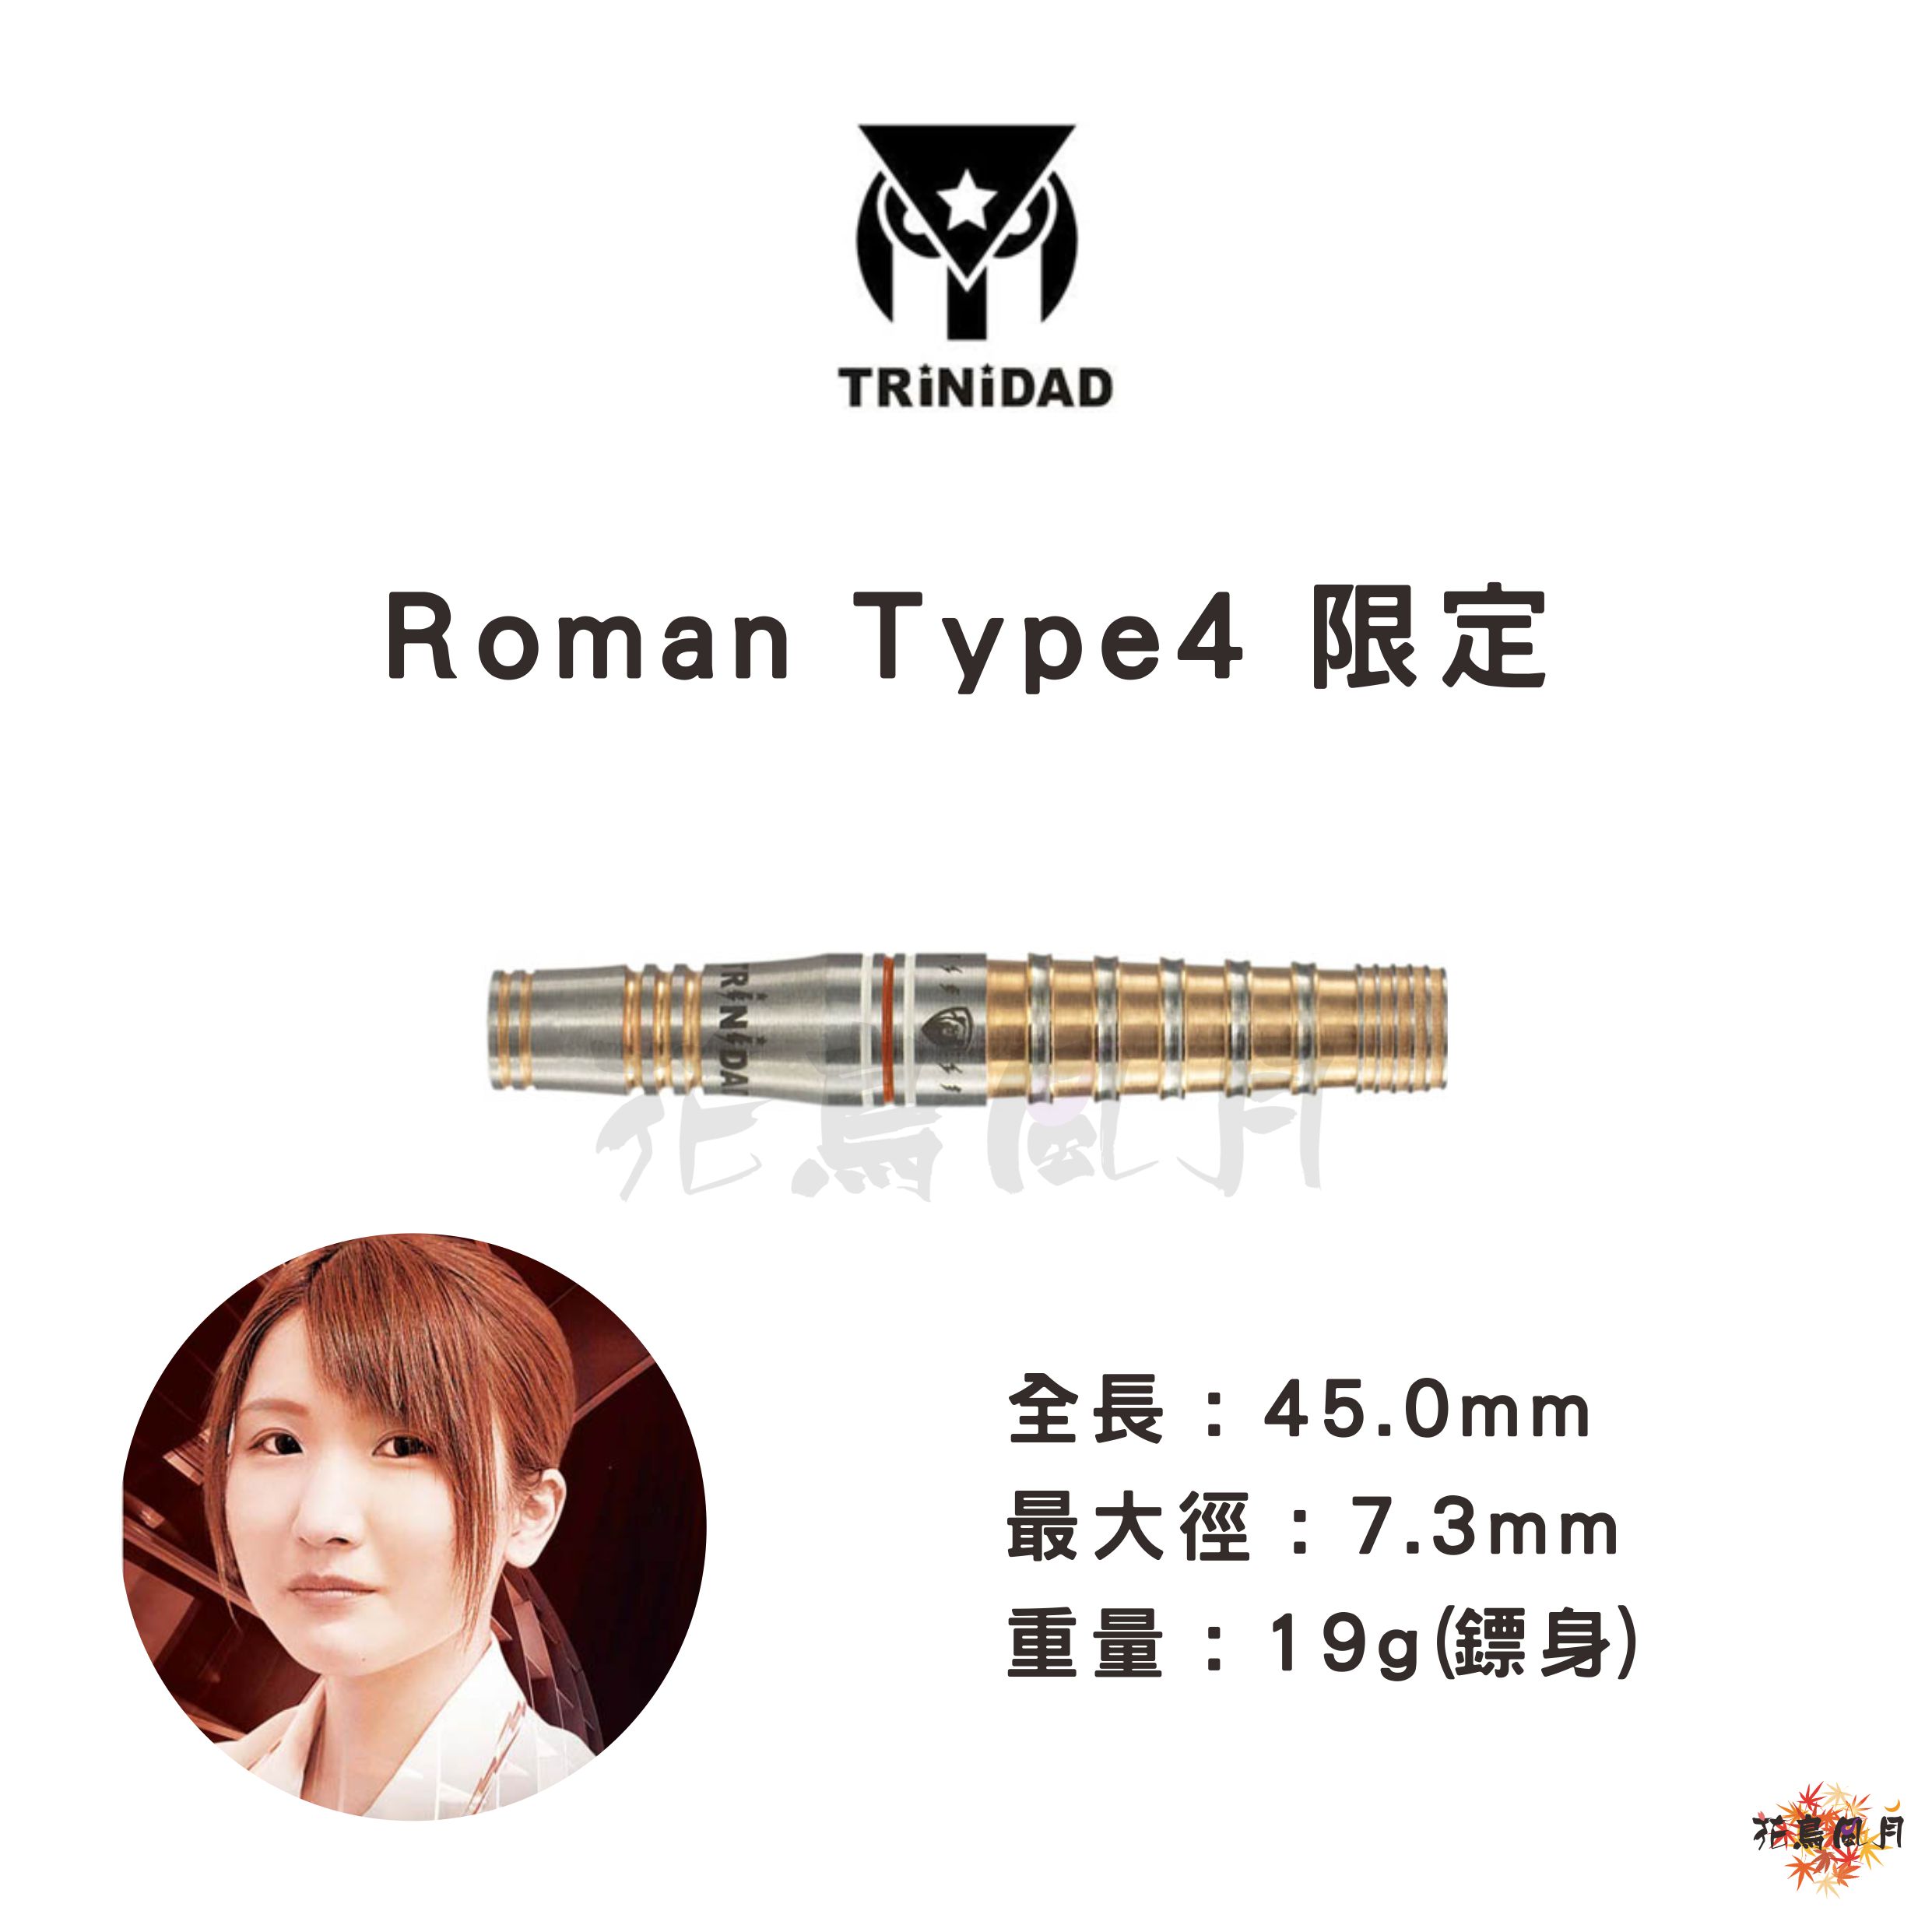 Roman-Type4限定-1.jpg